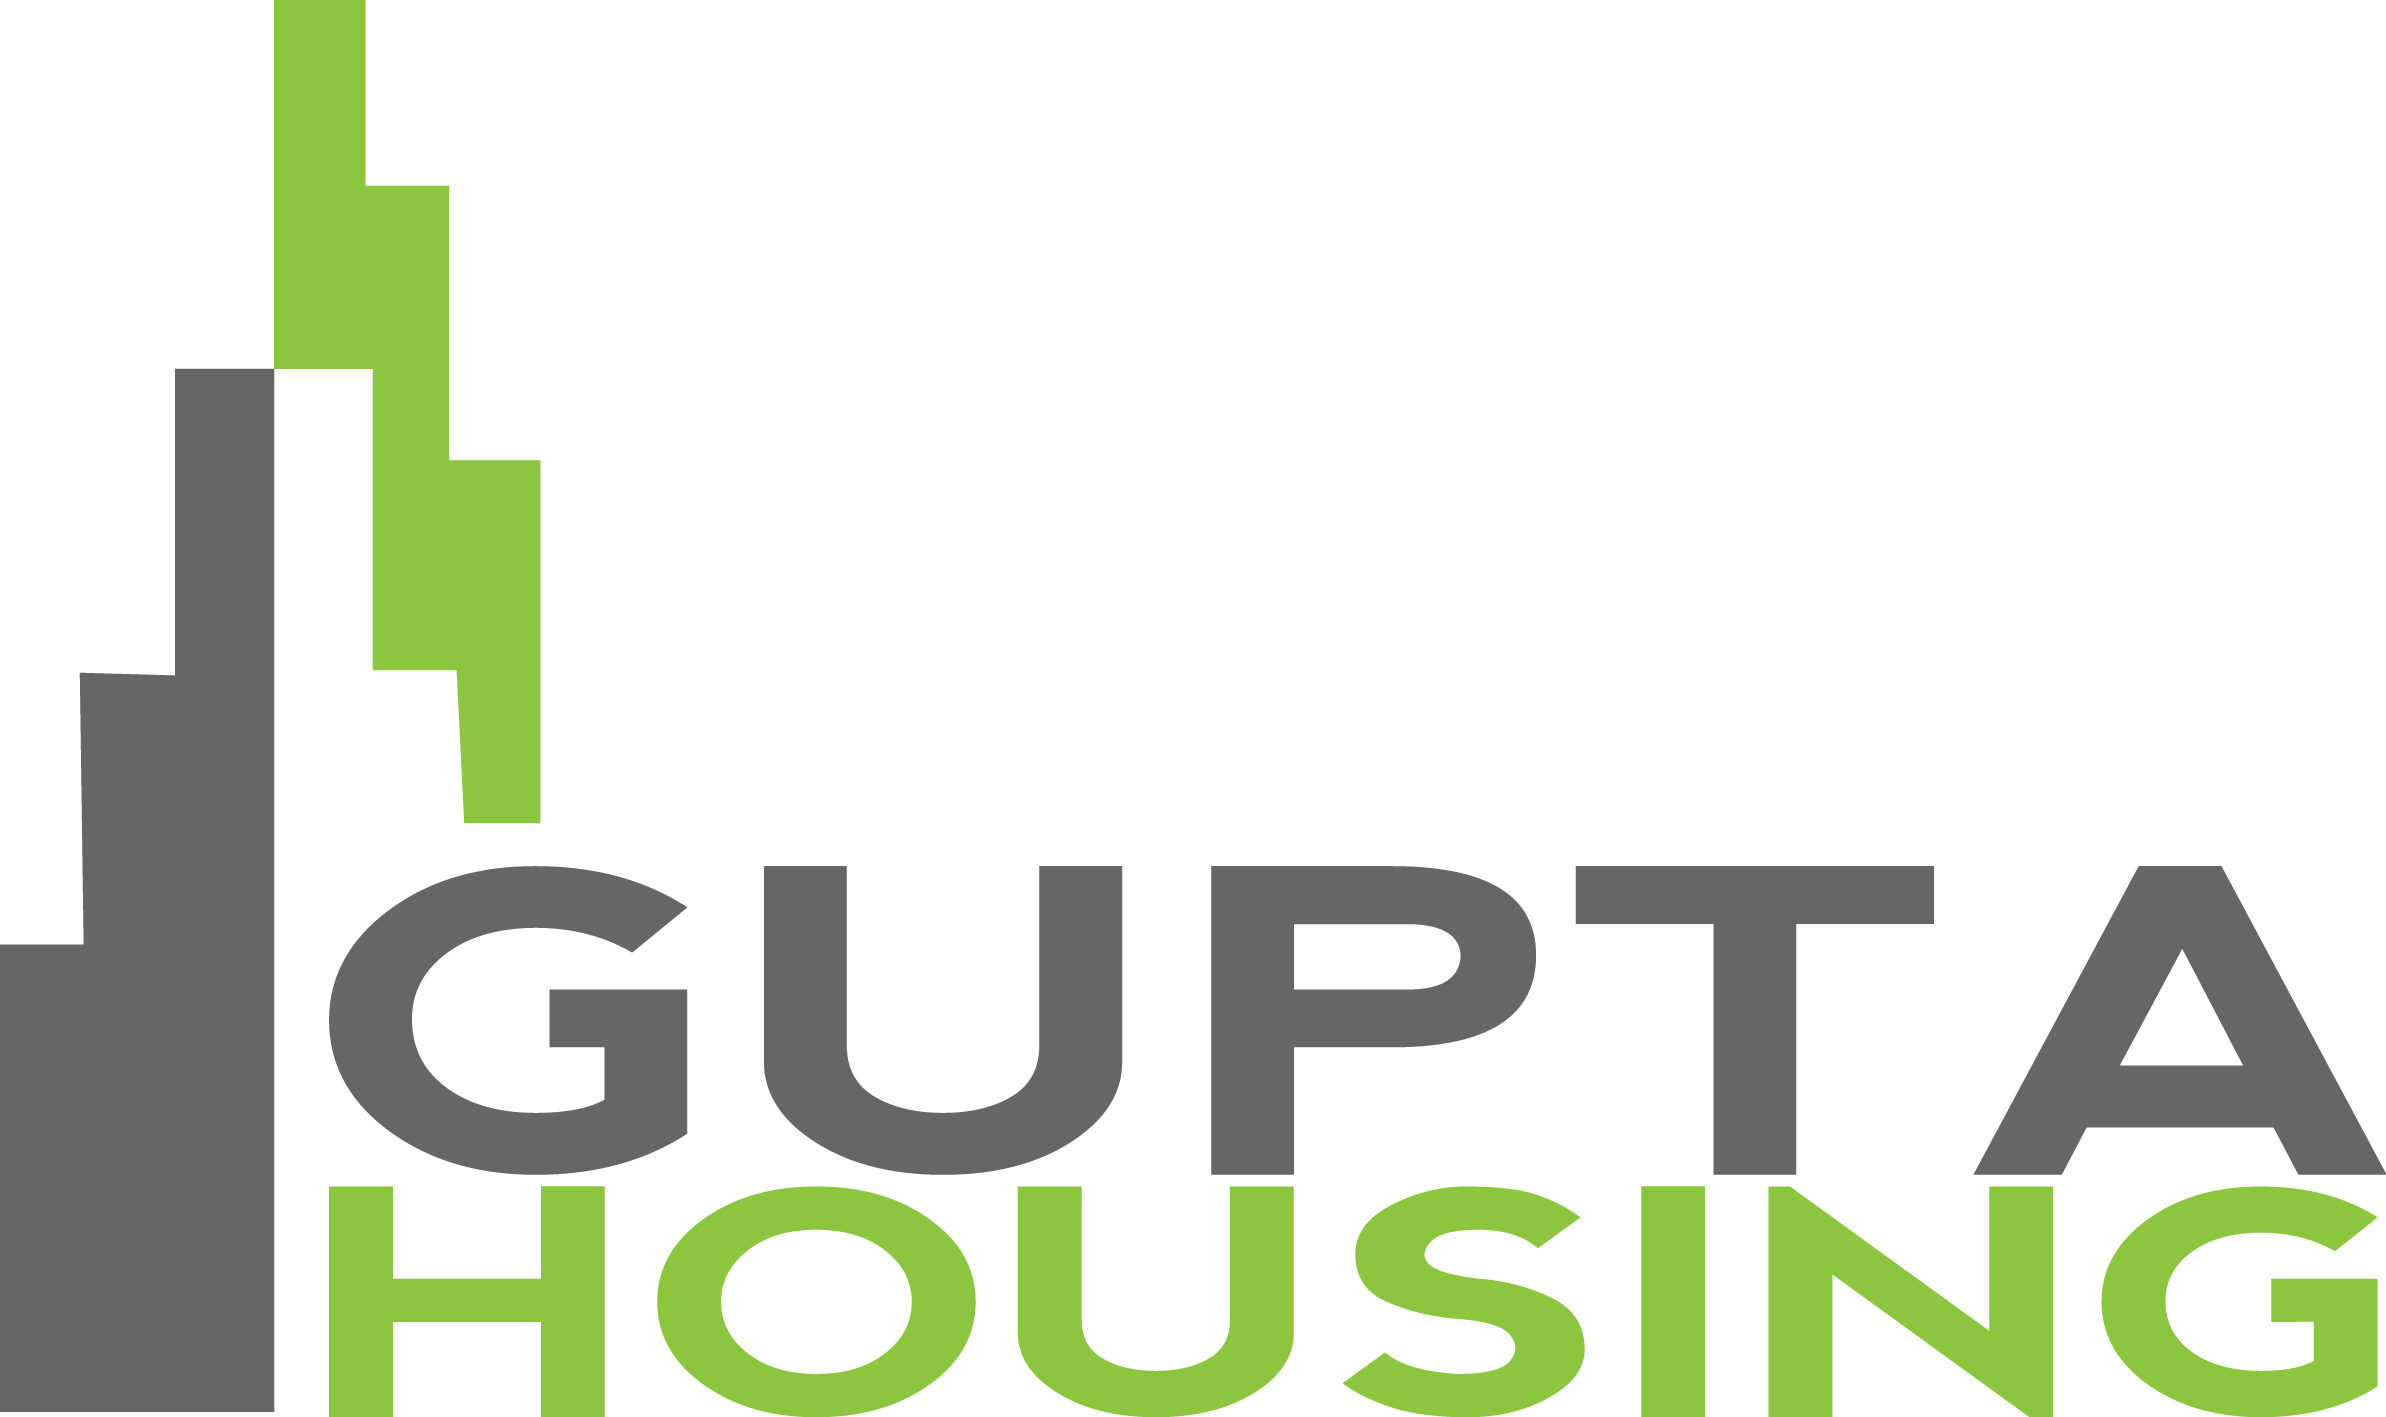 Gupta Housing